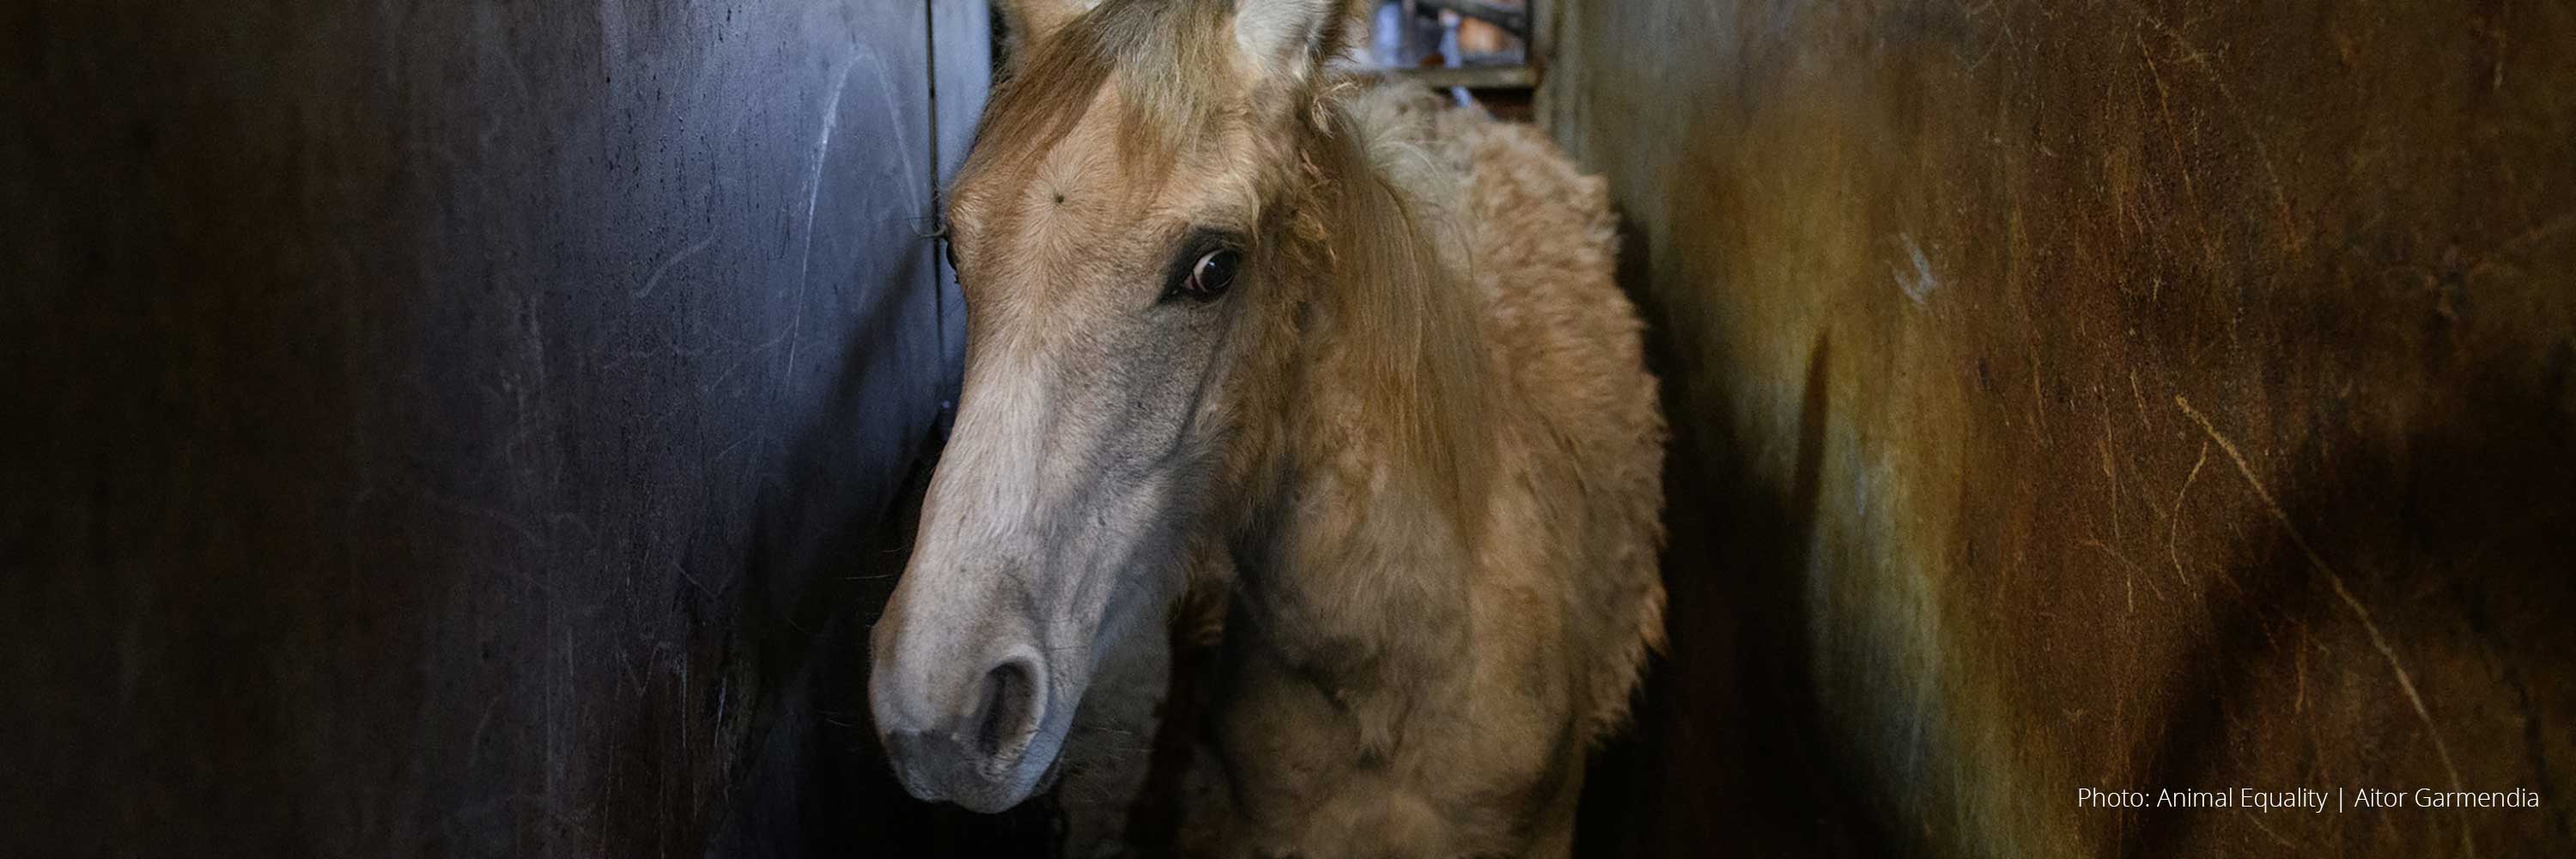 ES horse investigation